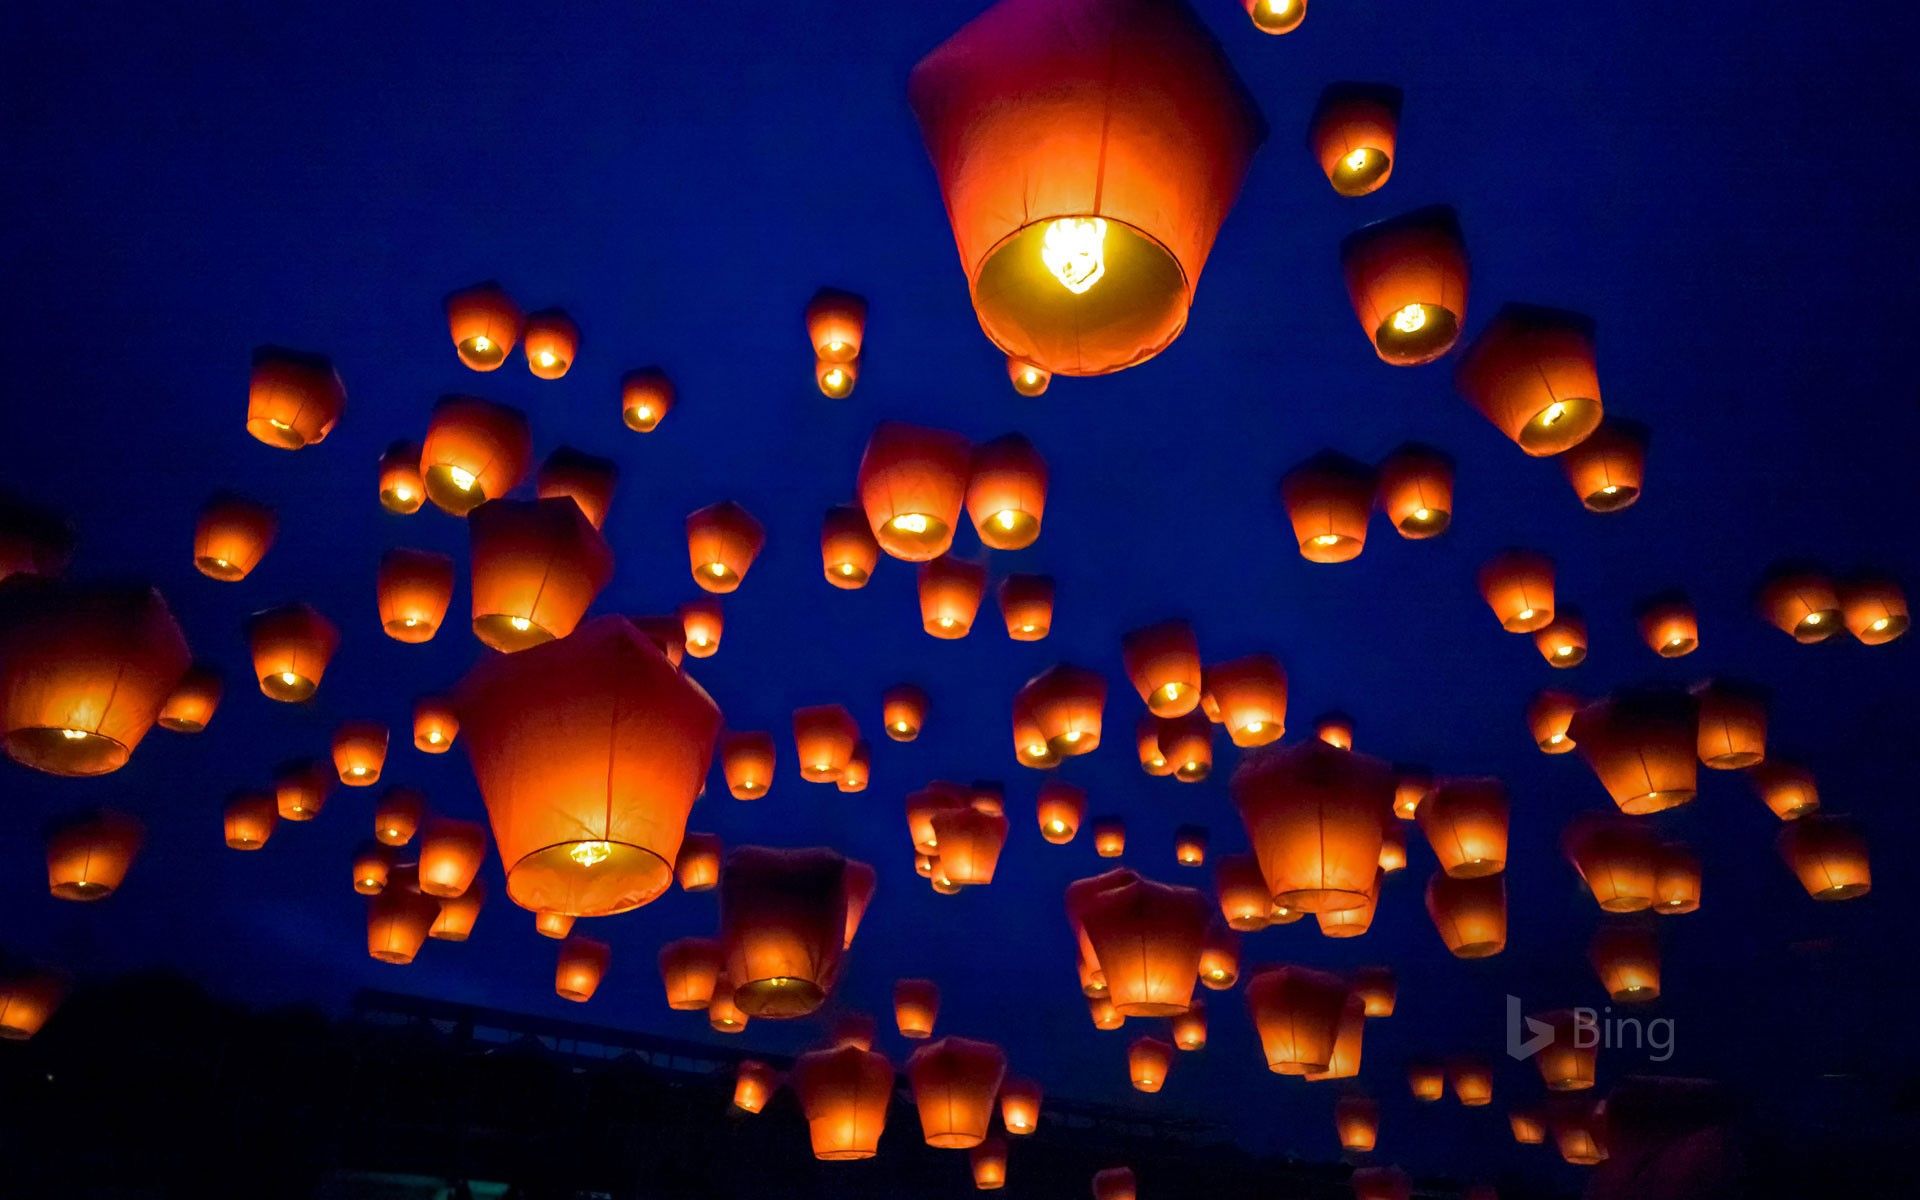 Pingxi Sky Lantern Festival in Taipei, Taiwan.